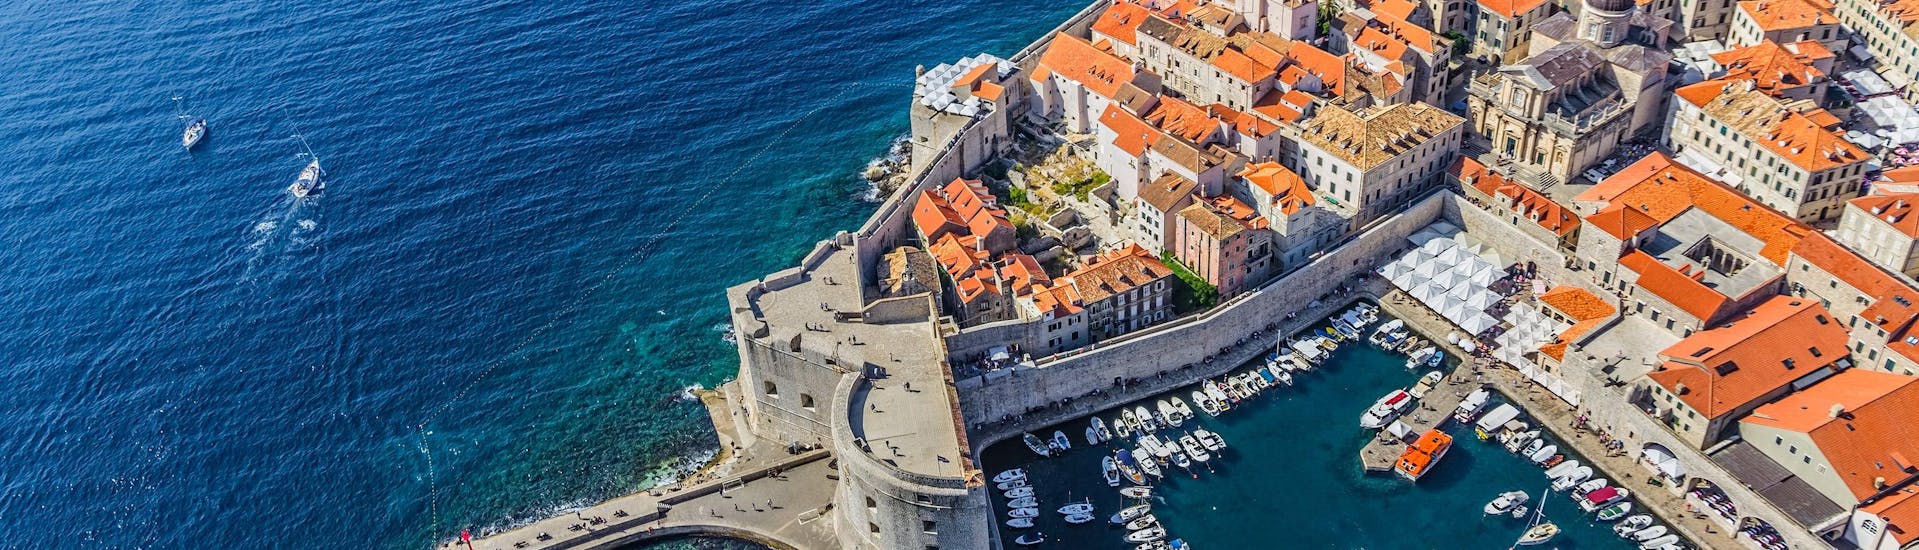 Ein Blick aus der Vogelperspektive auf eine Handvoll Boote, die für eine Bootstour in Dubrovnik im alten Hafen bereit stehen.